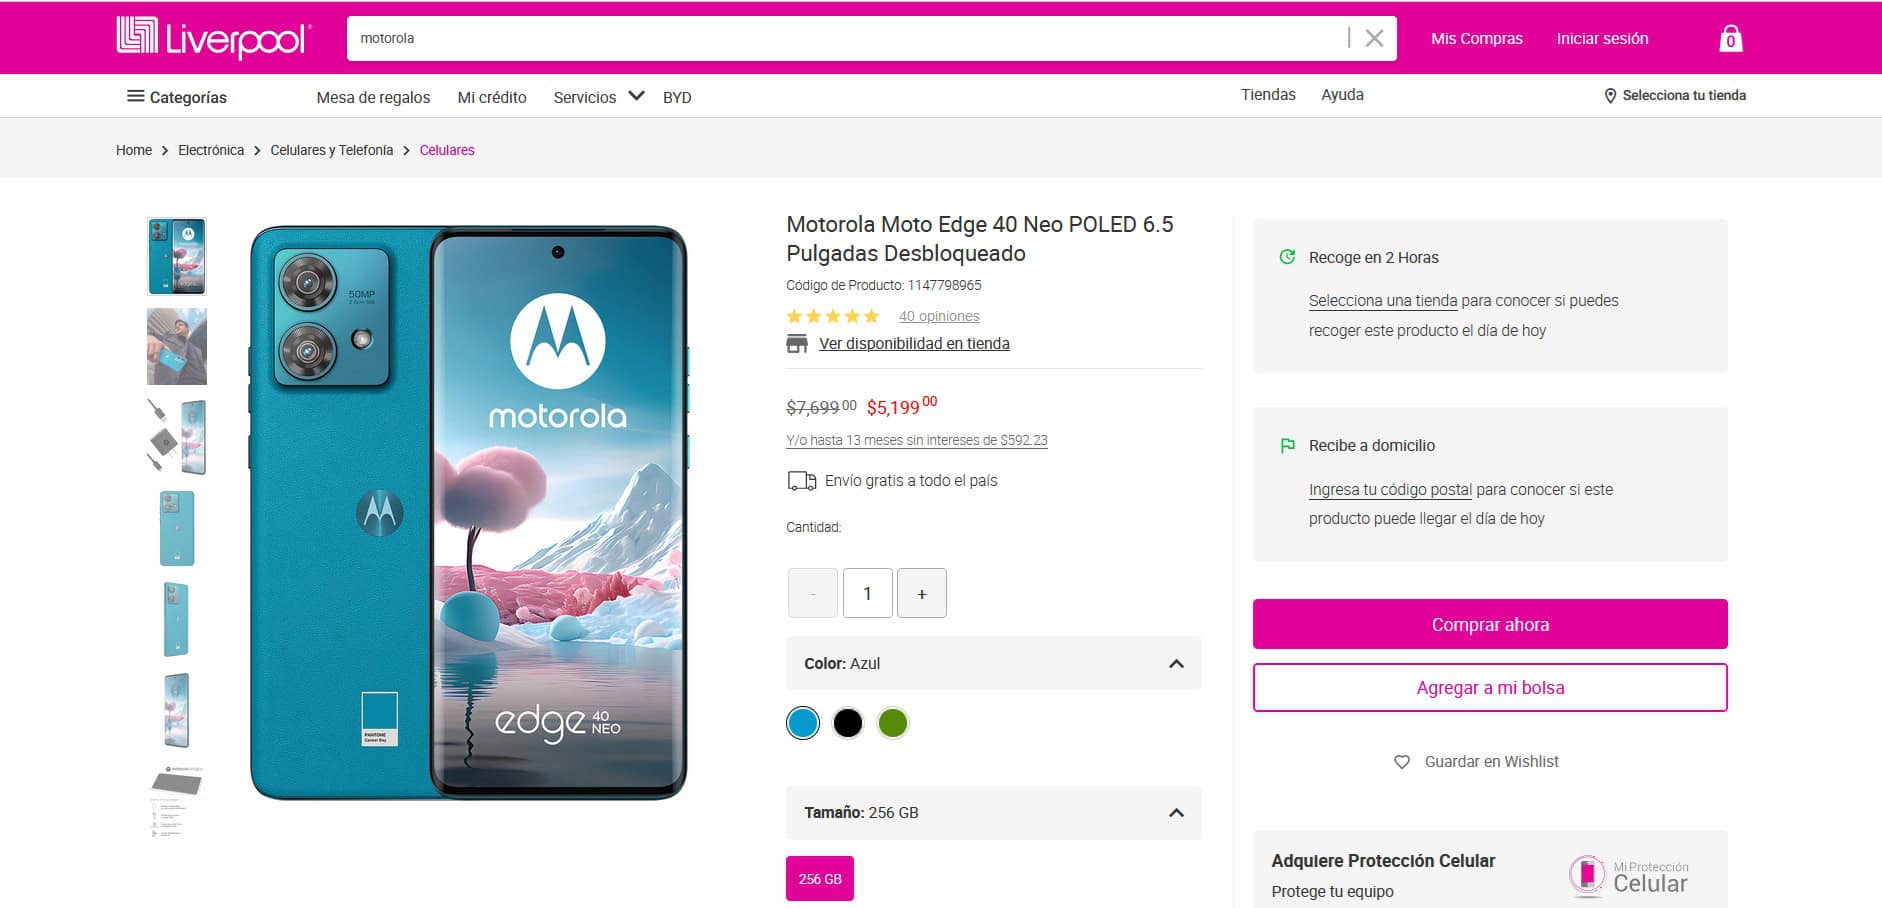 La oferta del Motorola Edge 40 Neo en Liverpool. Foto: Captura de pantalla